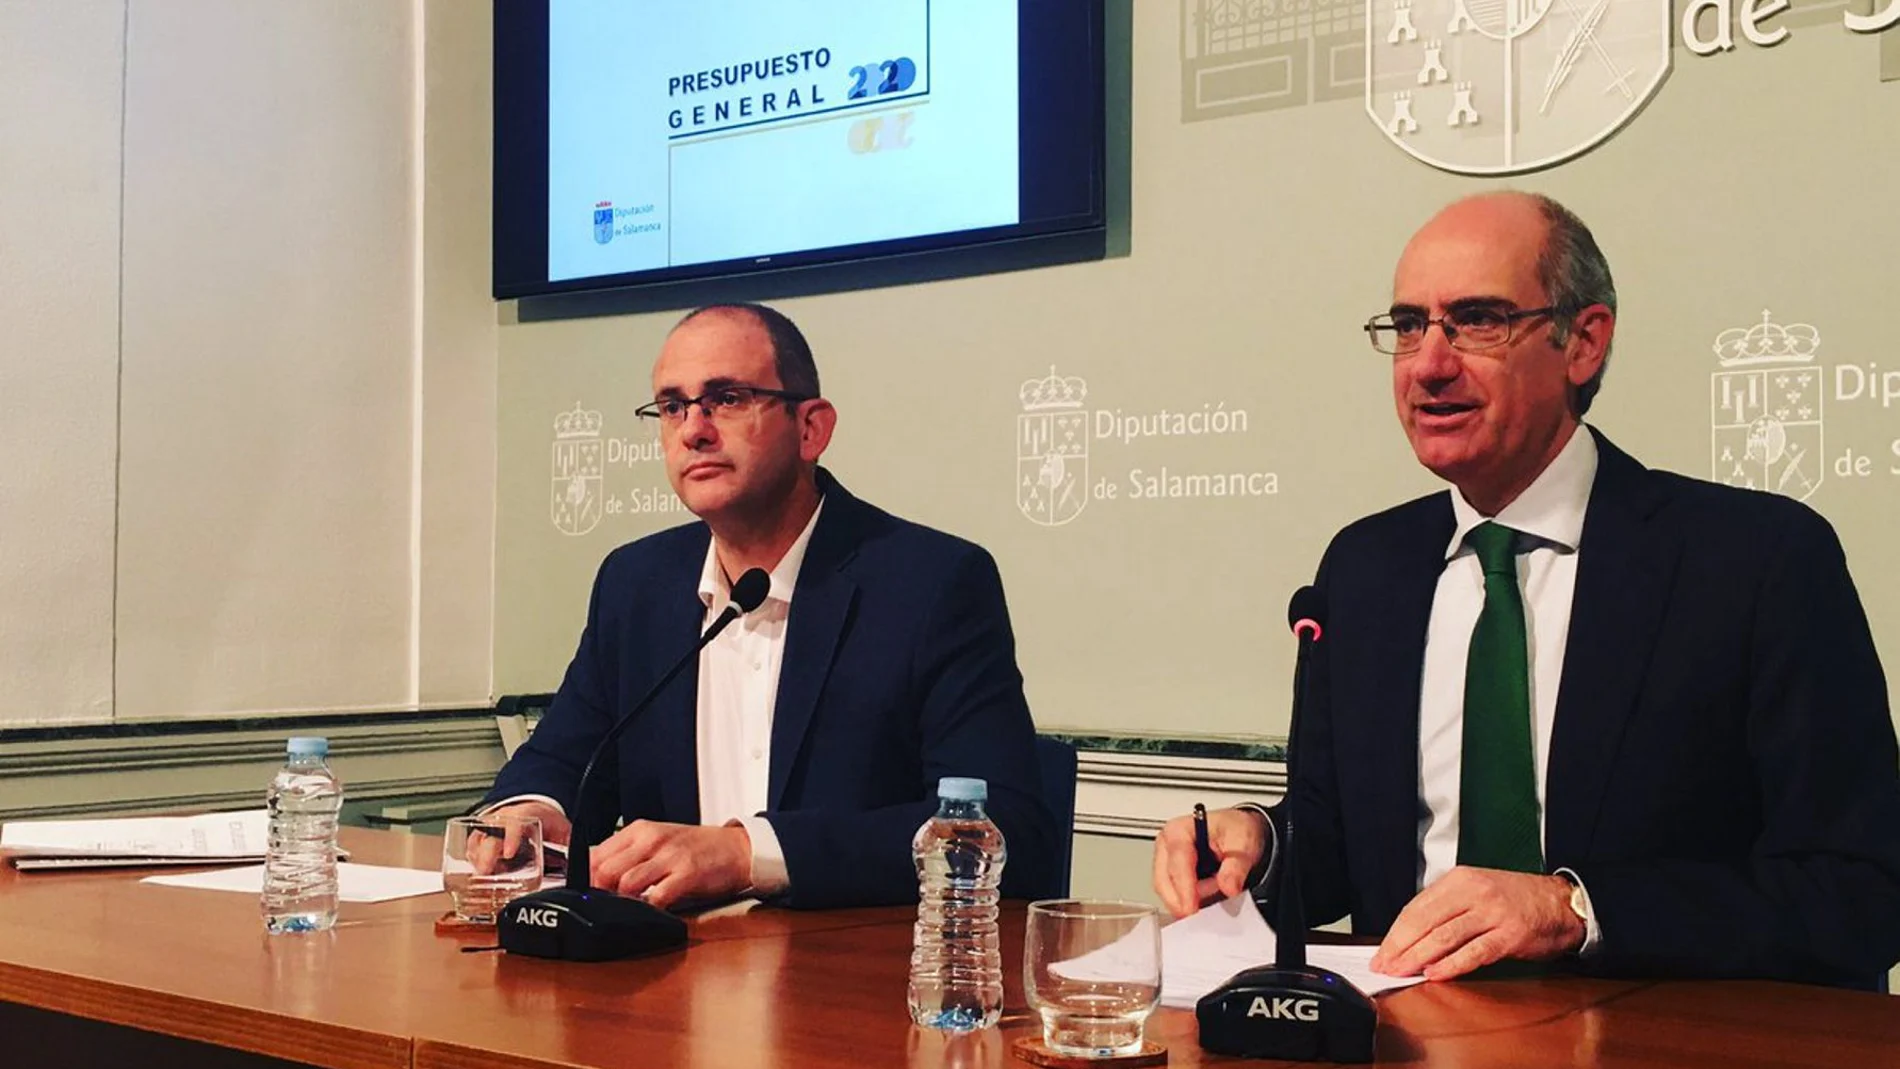 El presidente de la Diputación, Javier Iglesias, acompañado por el diputado Antonio Luis Martín, presenta el presupuesto para 2020